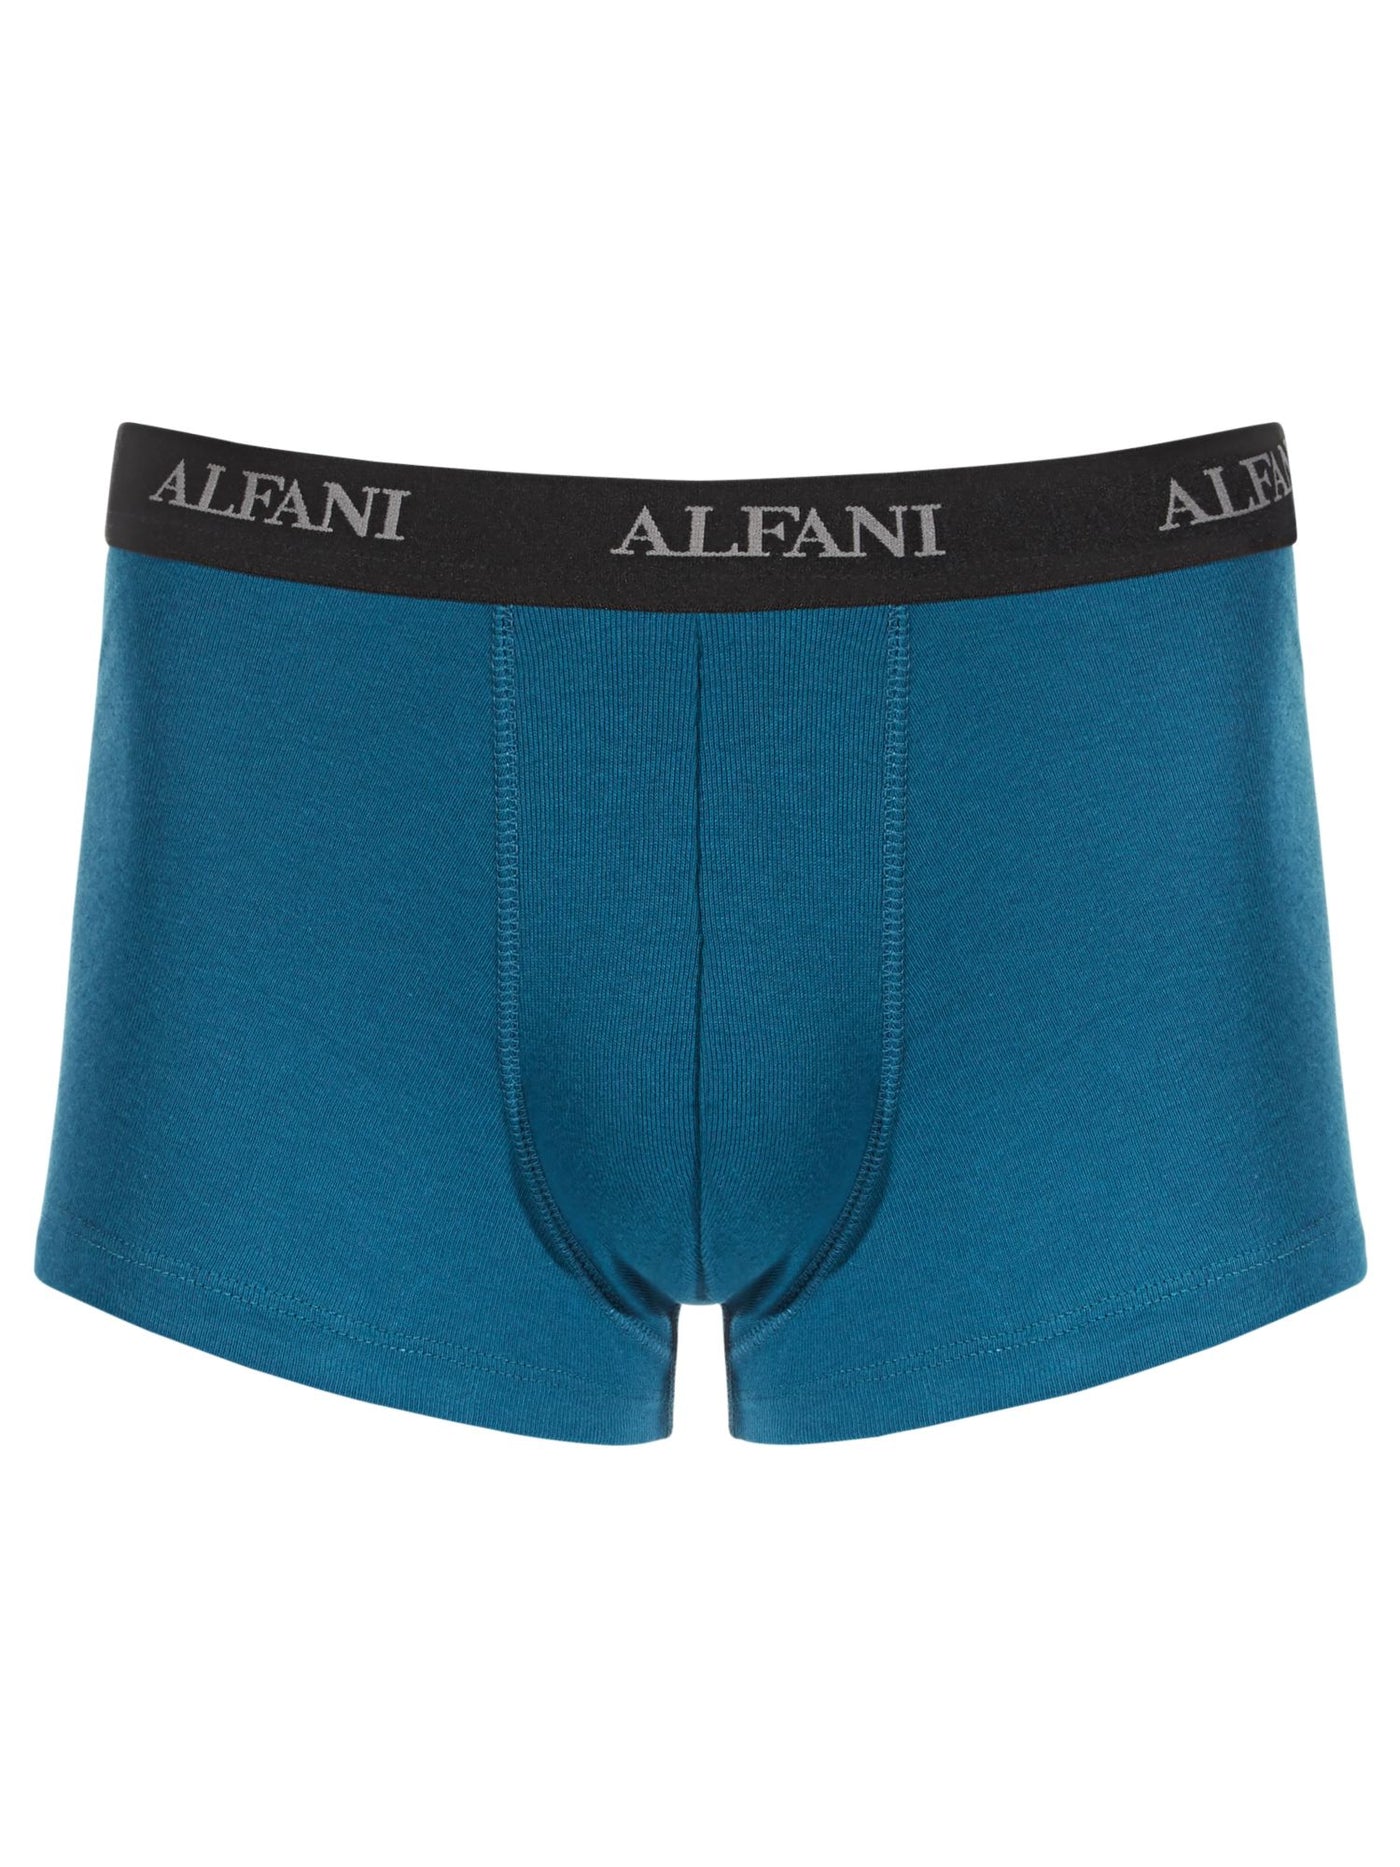 ALFATECH BY ALFANI Intimates Blue Tagless Comfort Fit Trunk Underwear XL